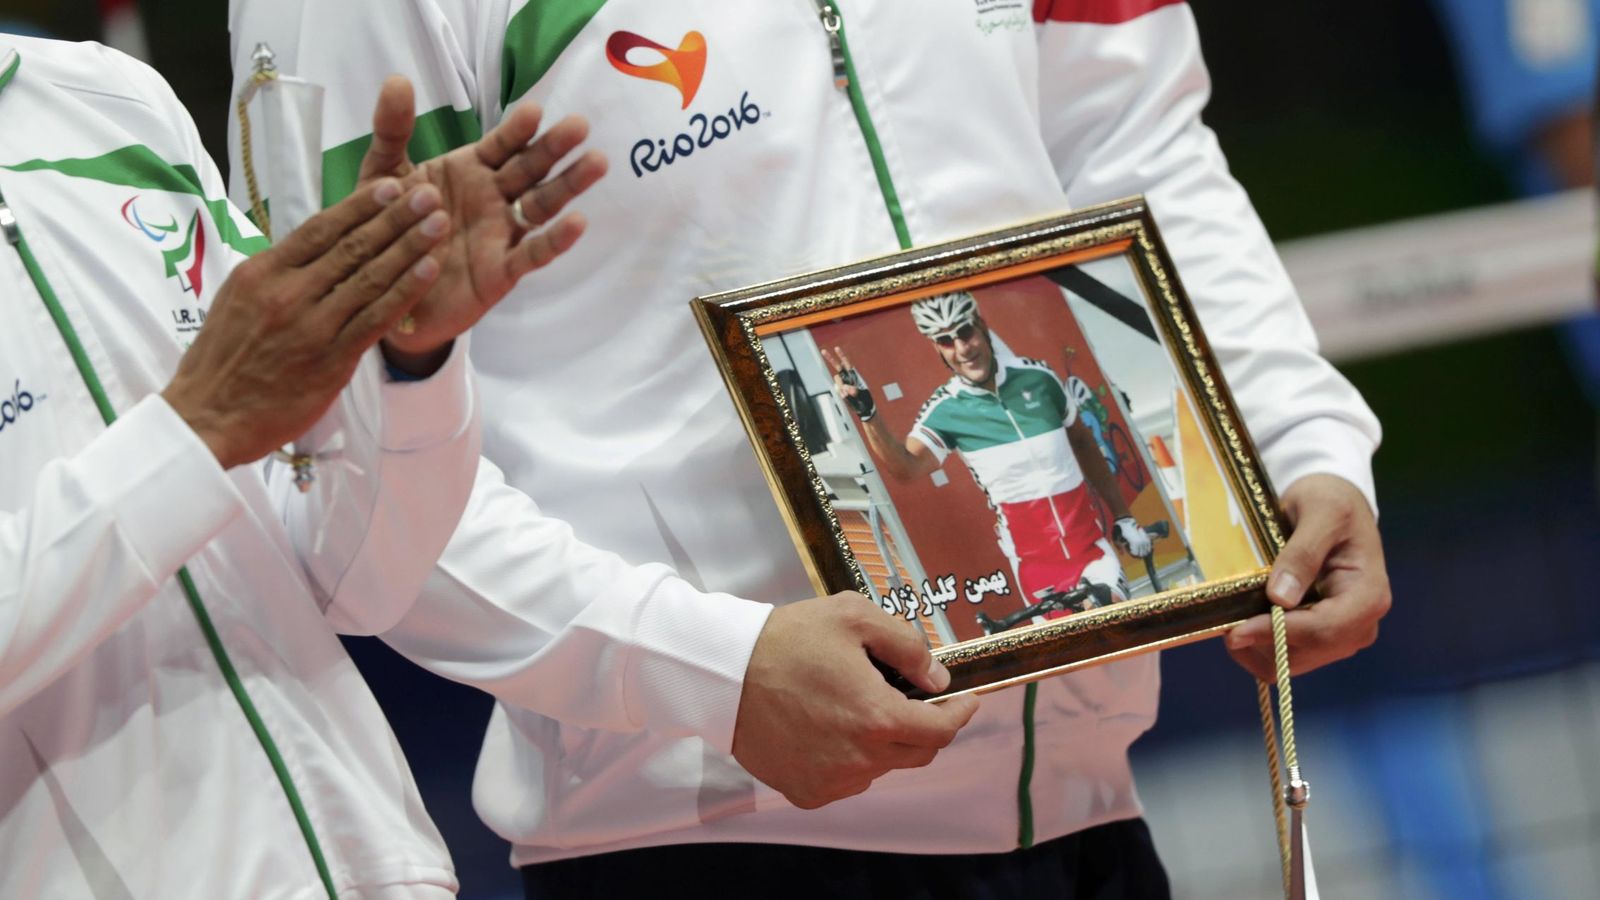 Foto: Antes de la final de voleibol hubo un recuerdo para Bahman Golbarnezhad, el ciclista iraní fallecido. (REUTERS)